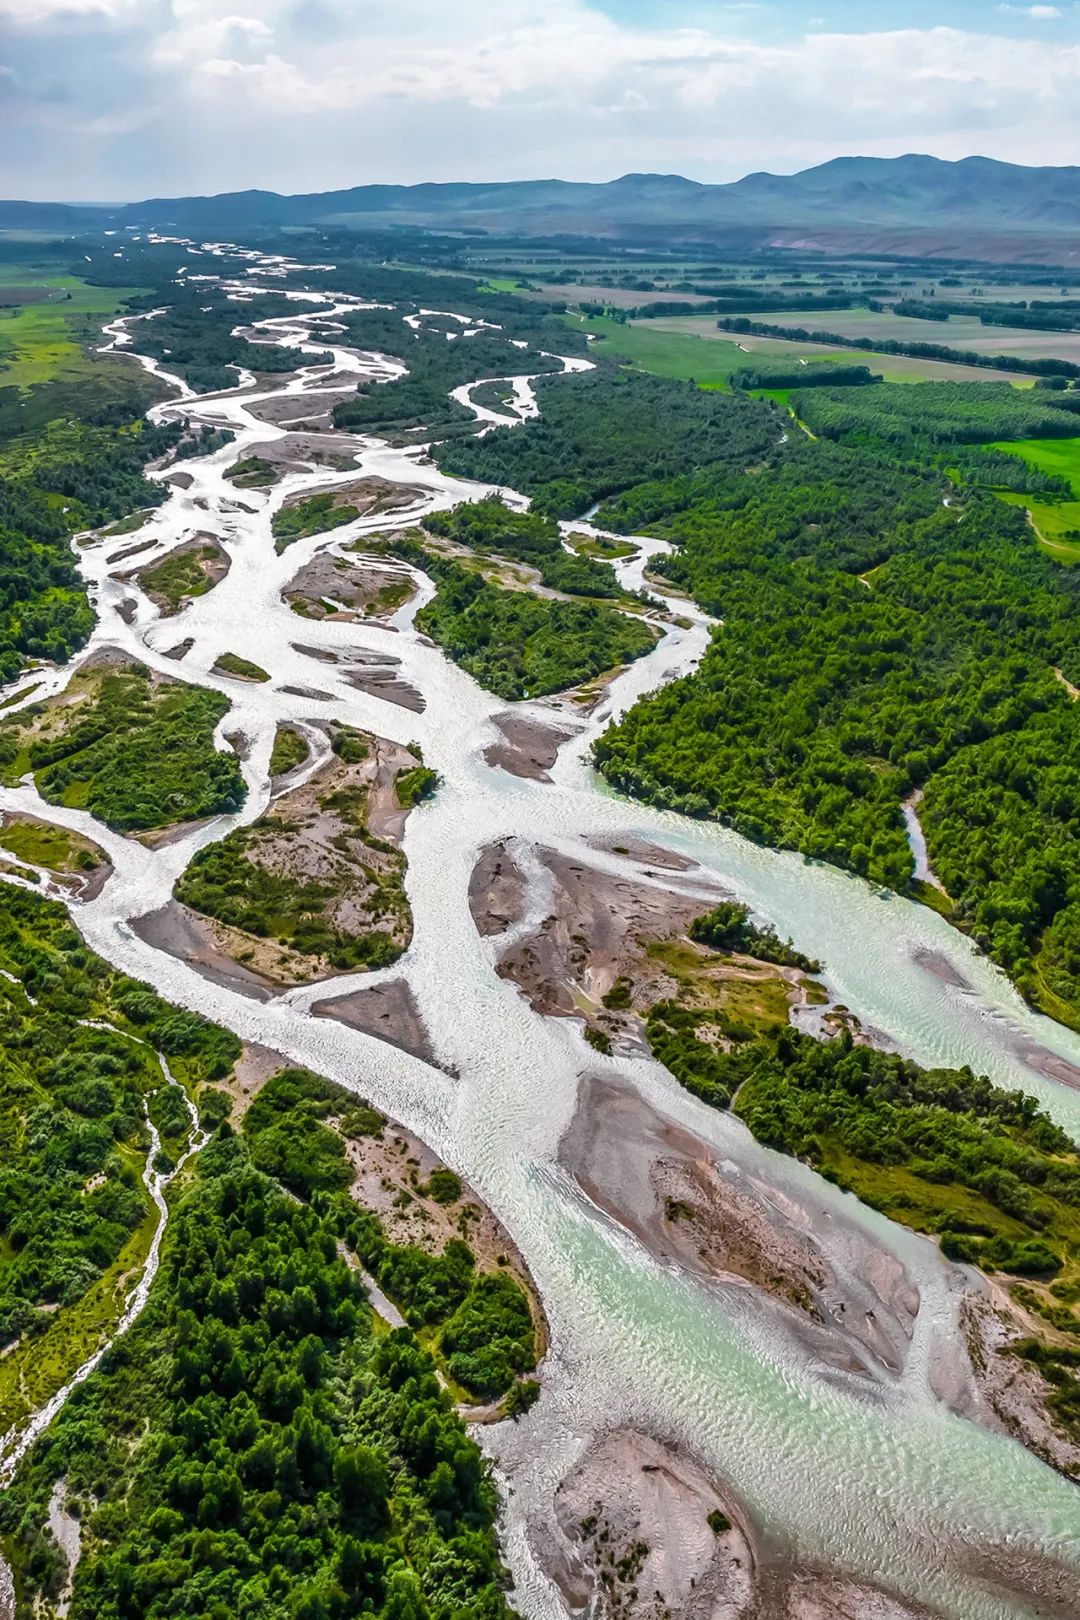  特克斯河有着明显的辫状水系特征。摄影/樊小喆